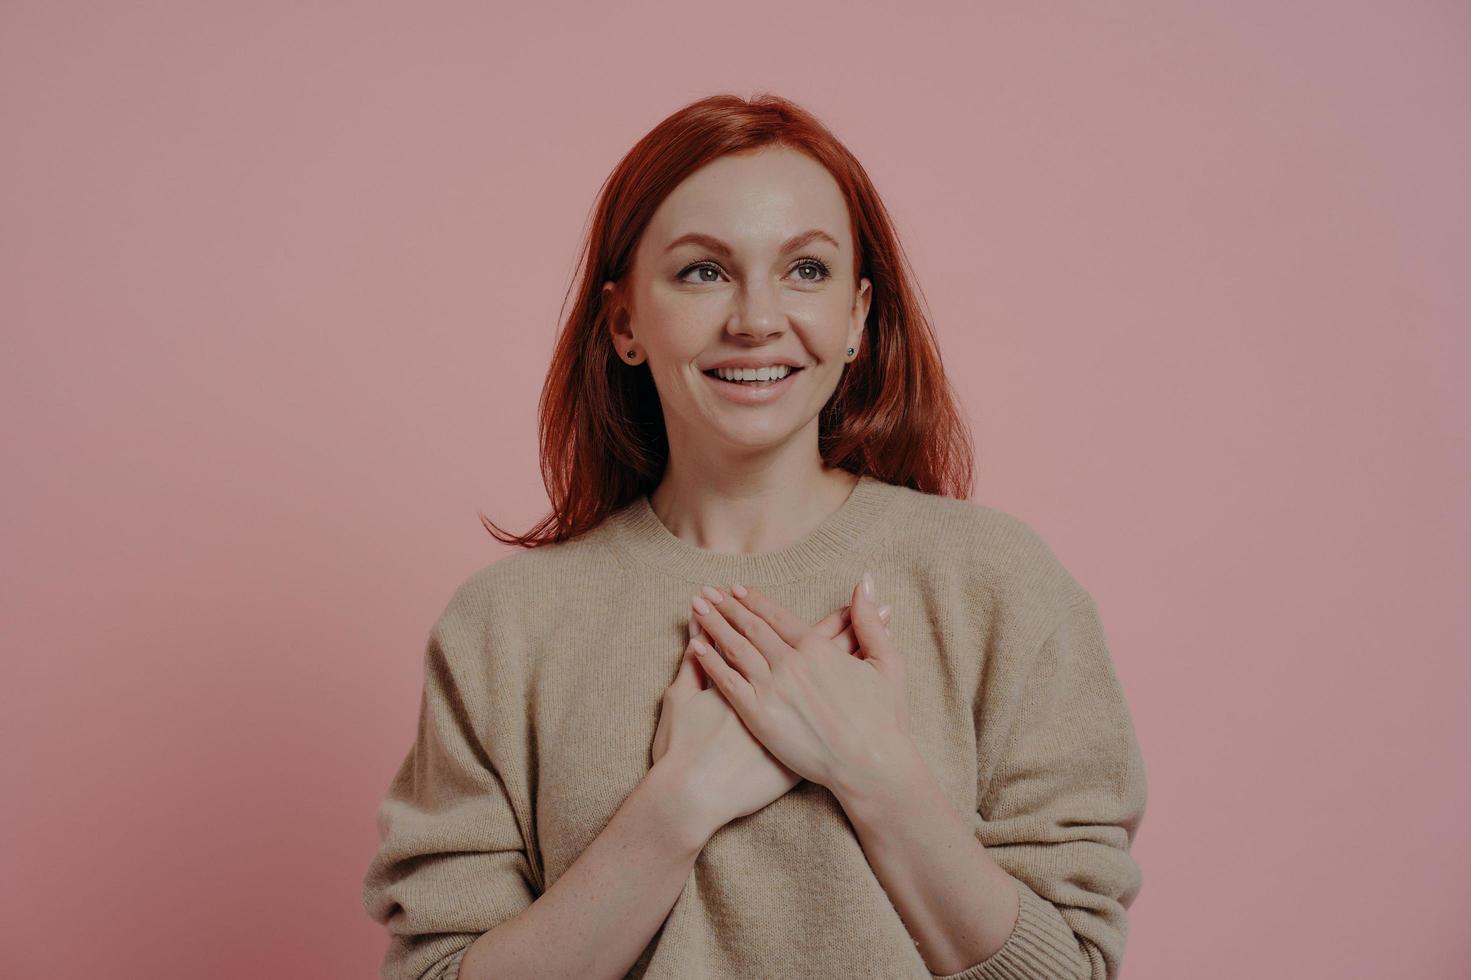 junge glückliche rothaarige Frau, die Hände auf die Brust legt, während sie isoliert auf rosa Hintergrund steht foto